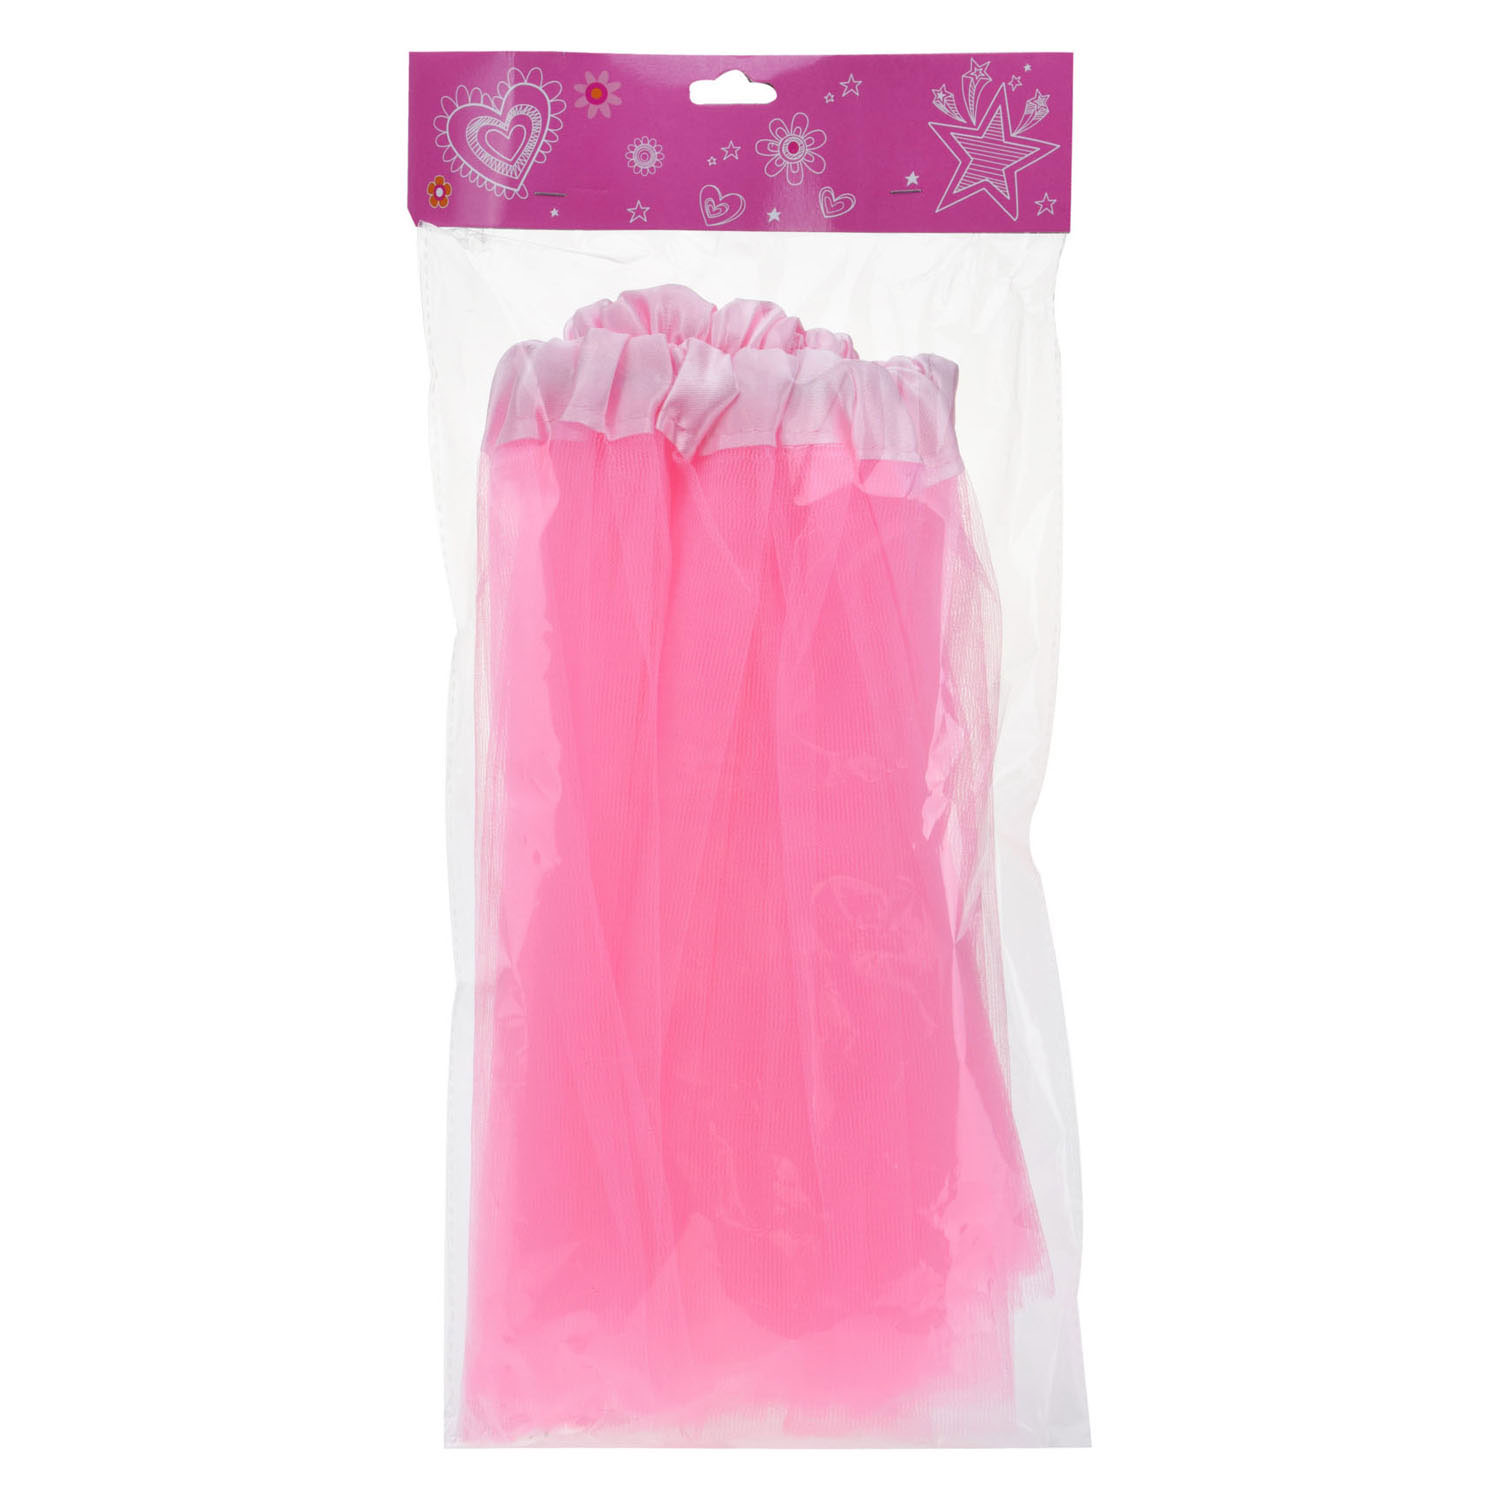 Prinsessenrokje Roze Polyester met Elastiek